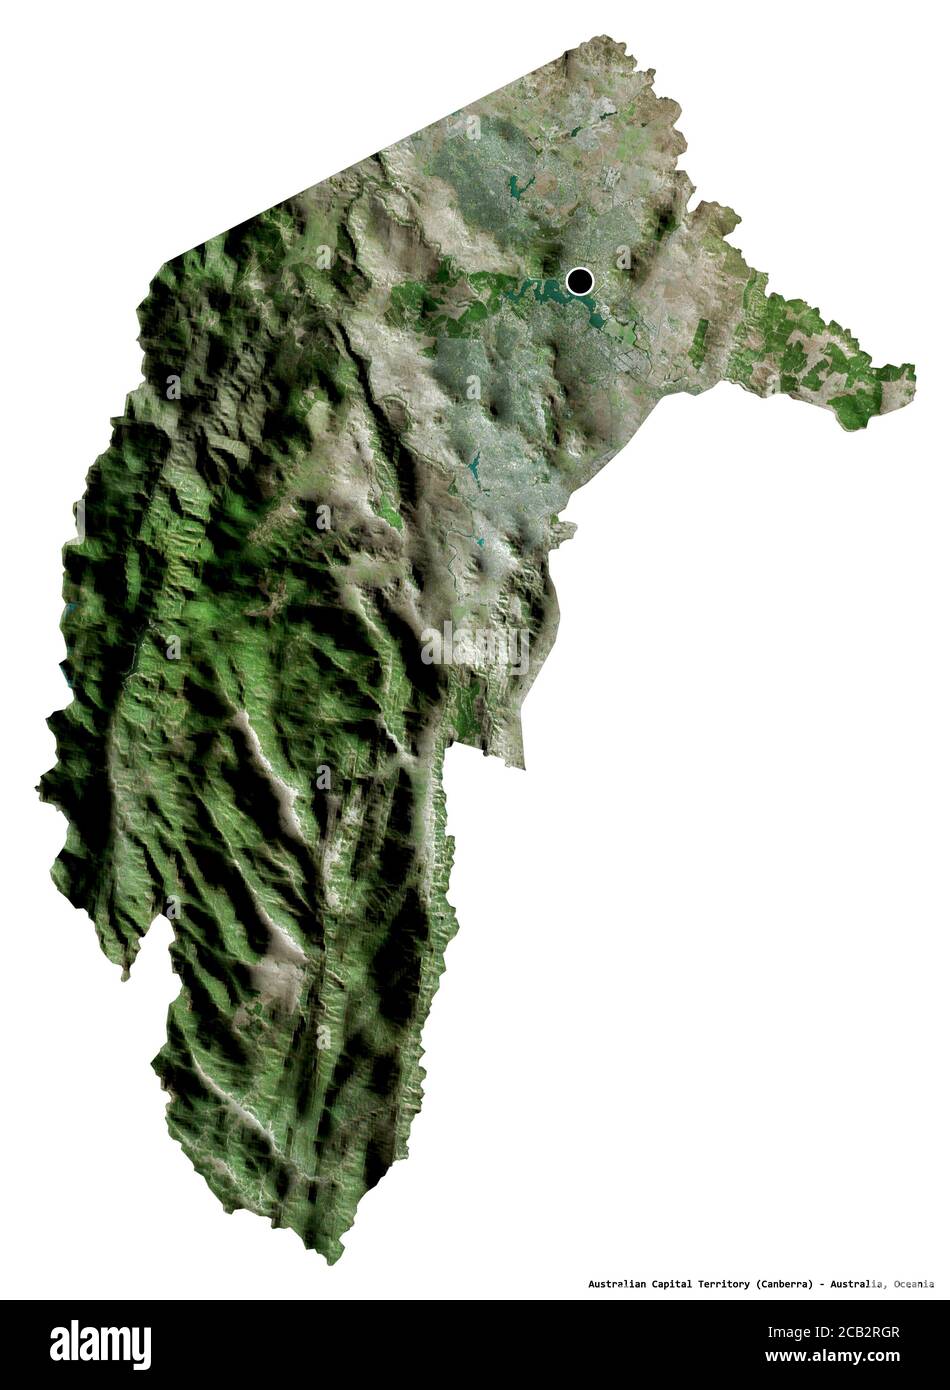 Forme du territoire de la capitale australienne, territoire de l'Australie, avec sa capitale isolée sur fond blanc. Imagerie satellite. Rendu 3D Banque D'Images